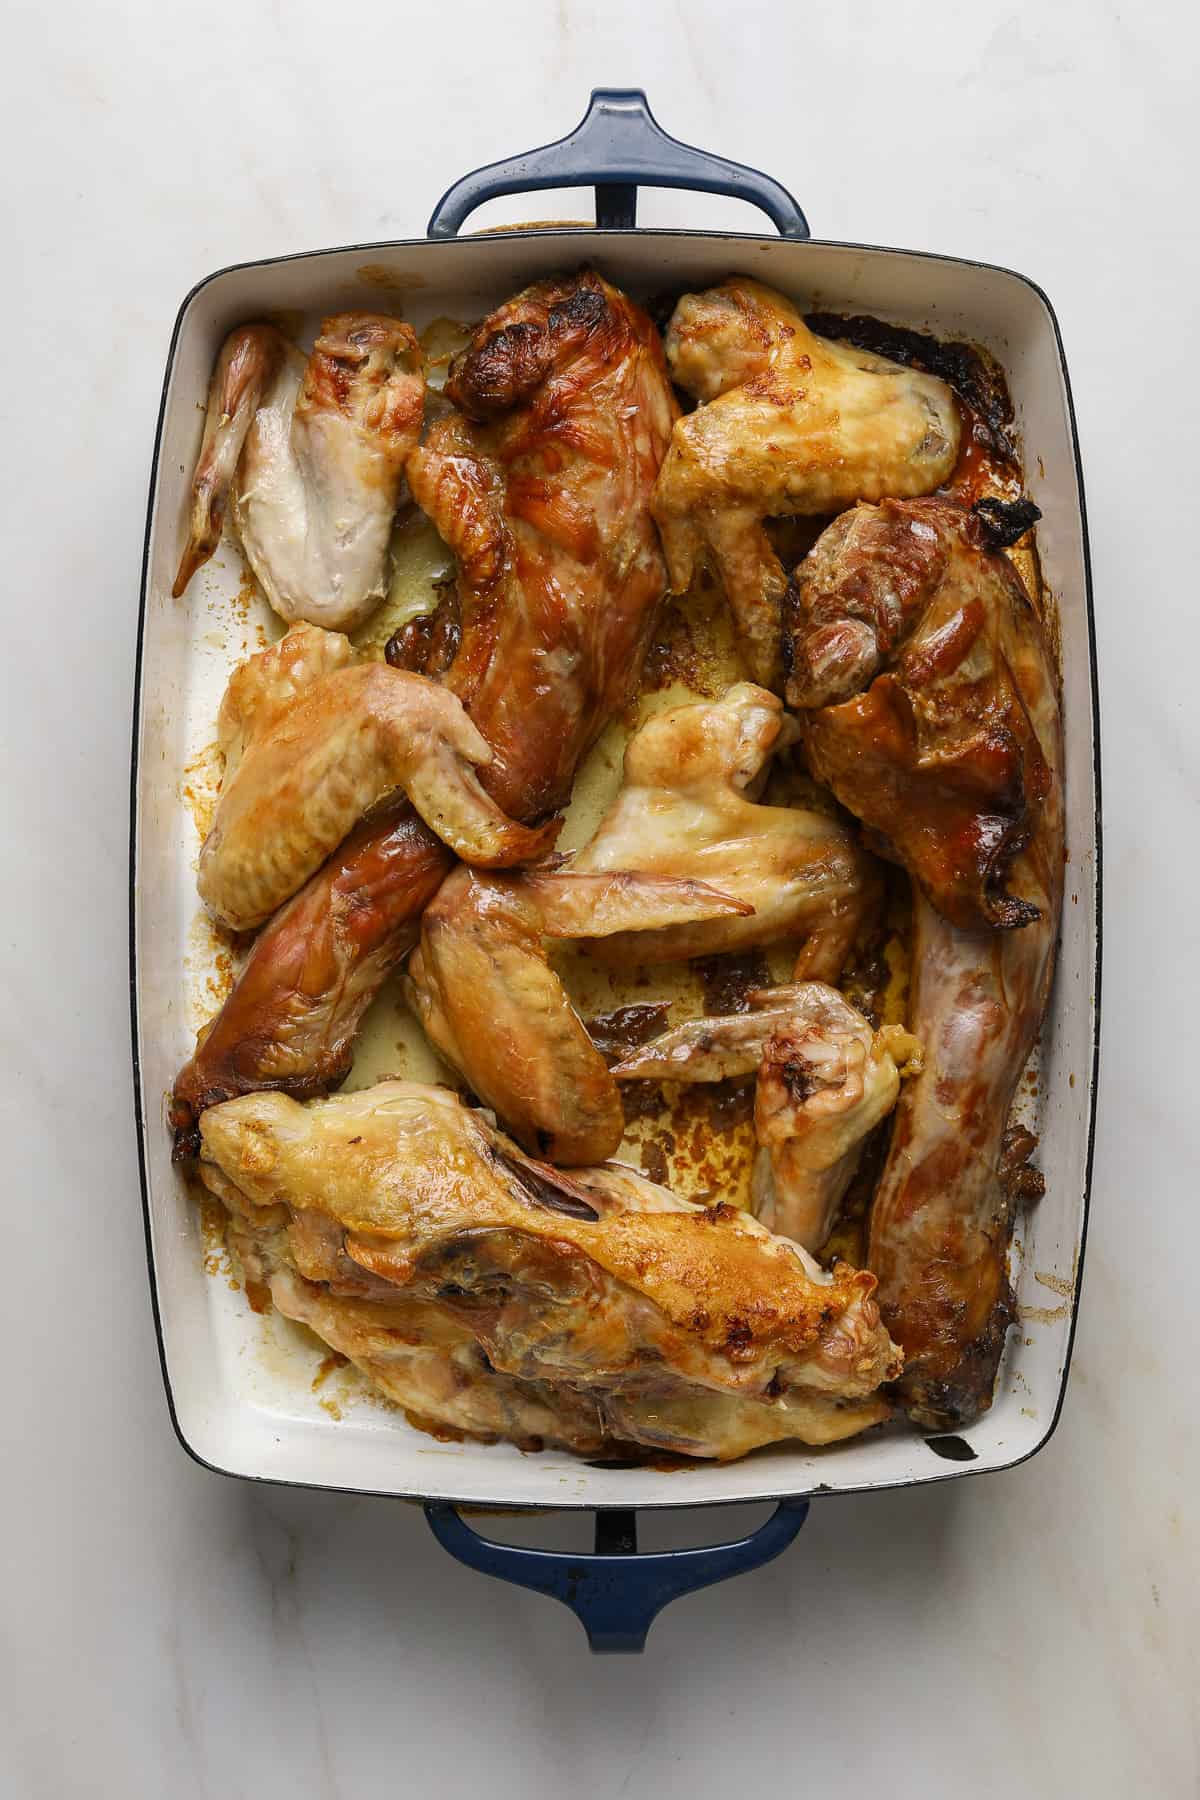 Roasted turkey bones in an enamel baking tray.